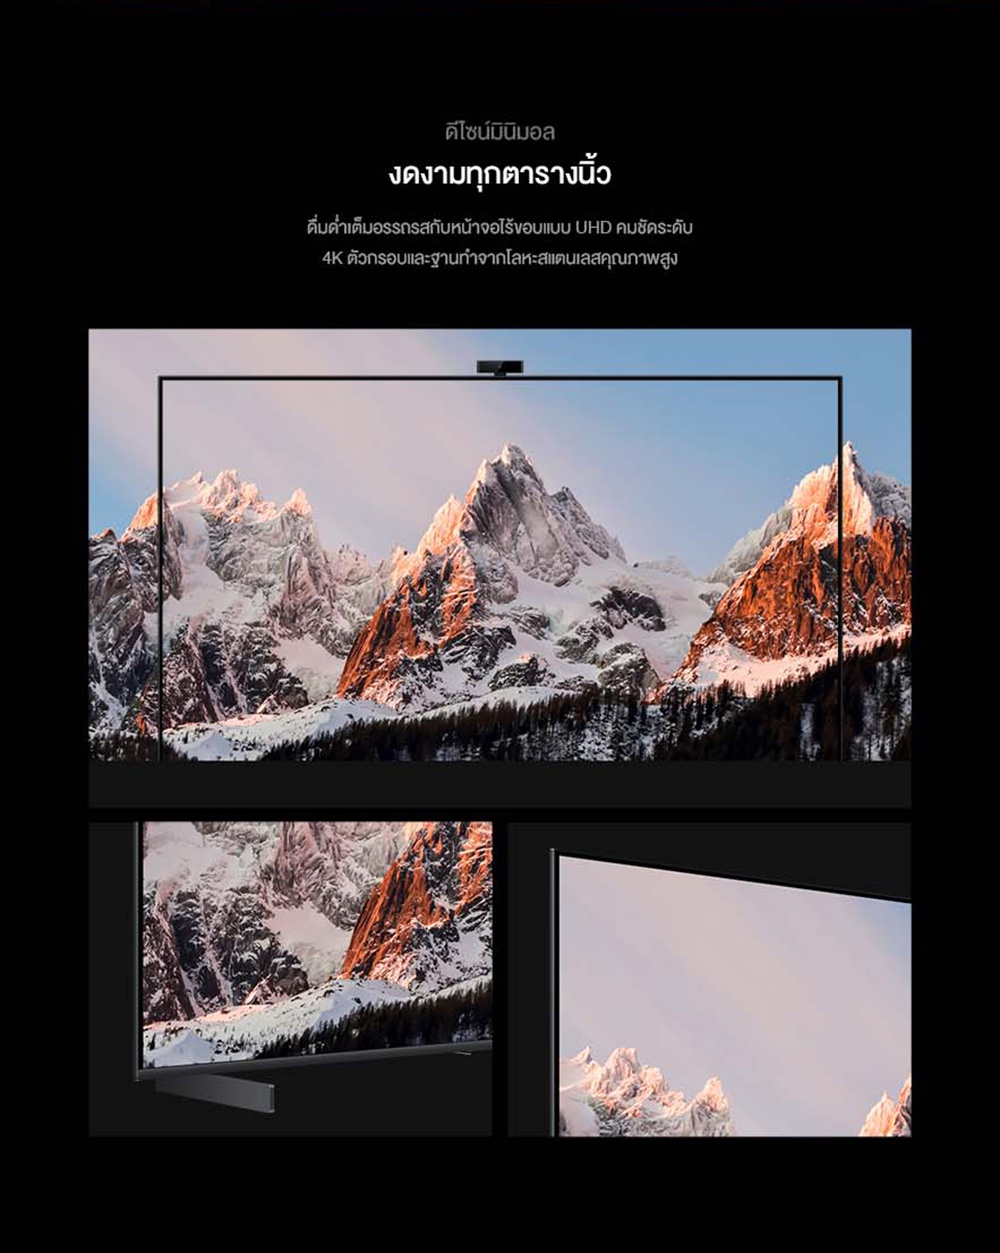 รูปภาพรายละเอียดของ HUAWEI Vision S ขนาดหน้าจอ 65" วิดีโอคอลแบบ 1080P ด้วย MeeTime อัตราการรีเฟรชหน้าจอ 120 Hz ลำโพง Huawei Sound 4